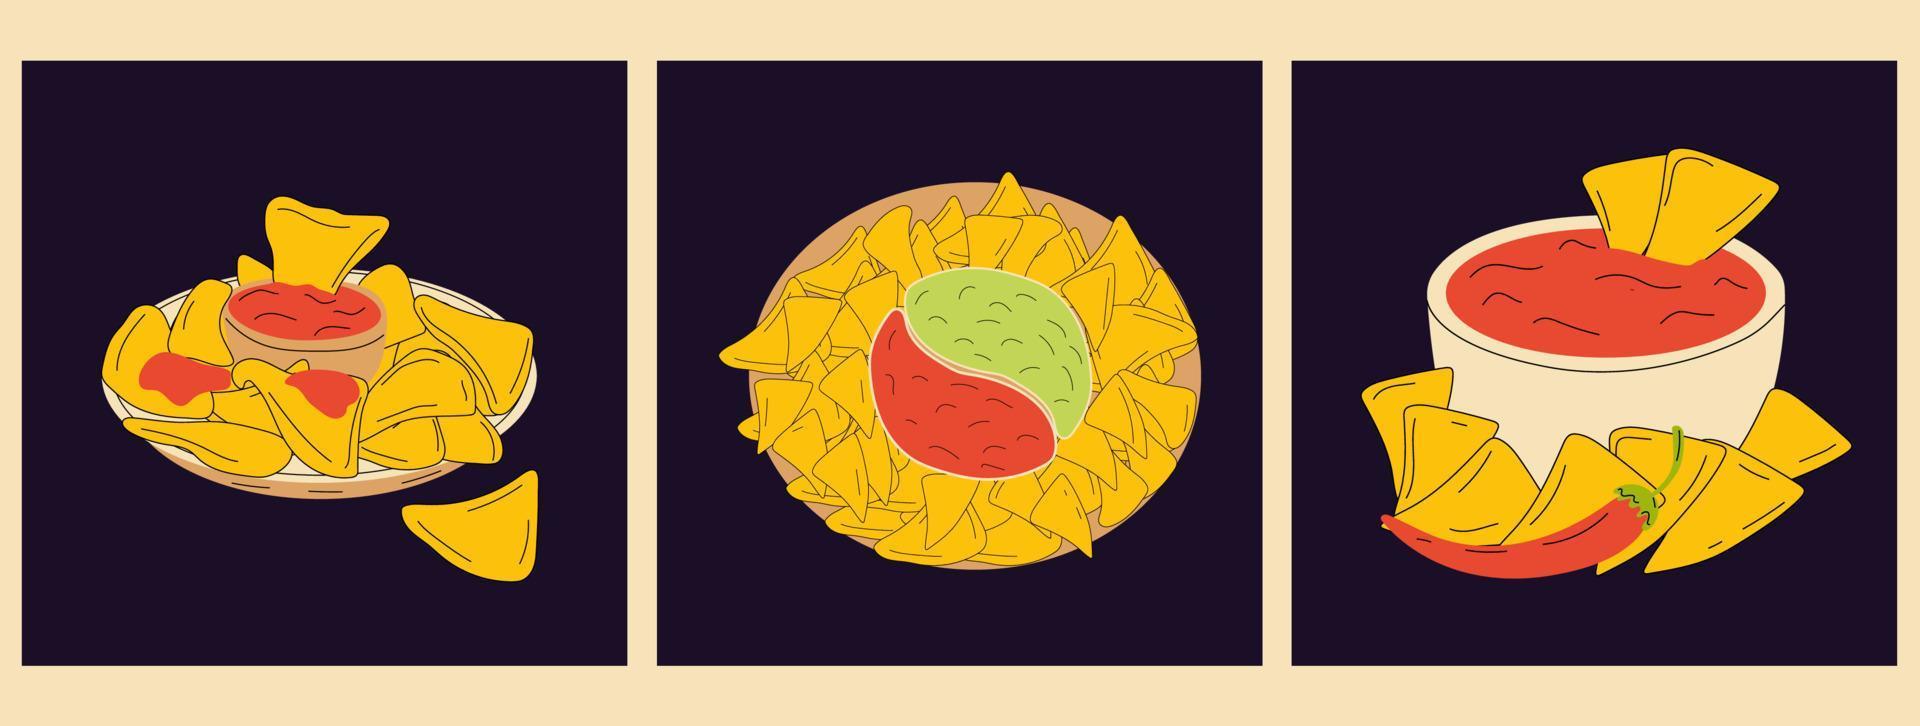 conjunto de três nachos e ícone isolado de vetor de salsa de pimenta. méxico nachos chips fast food lanche